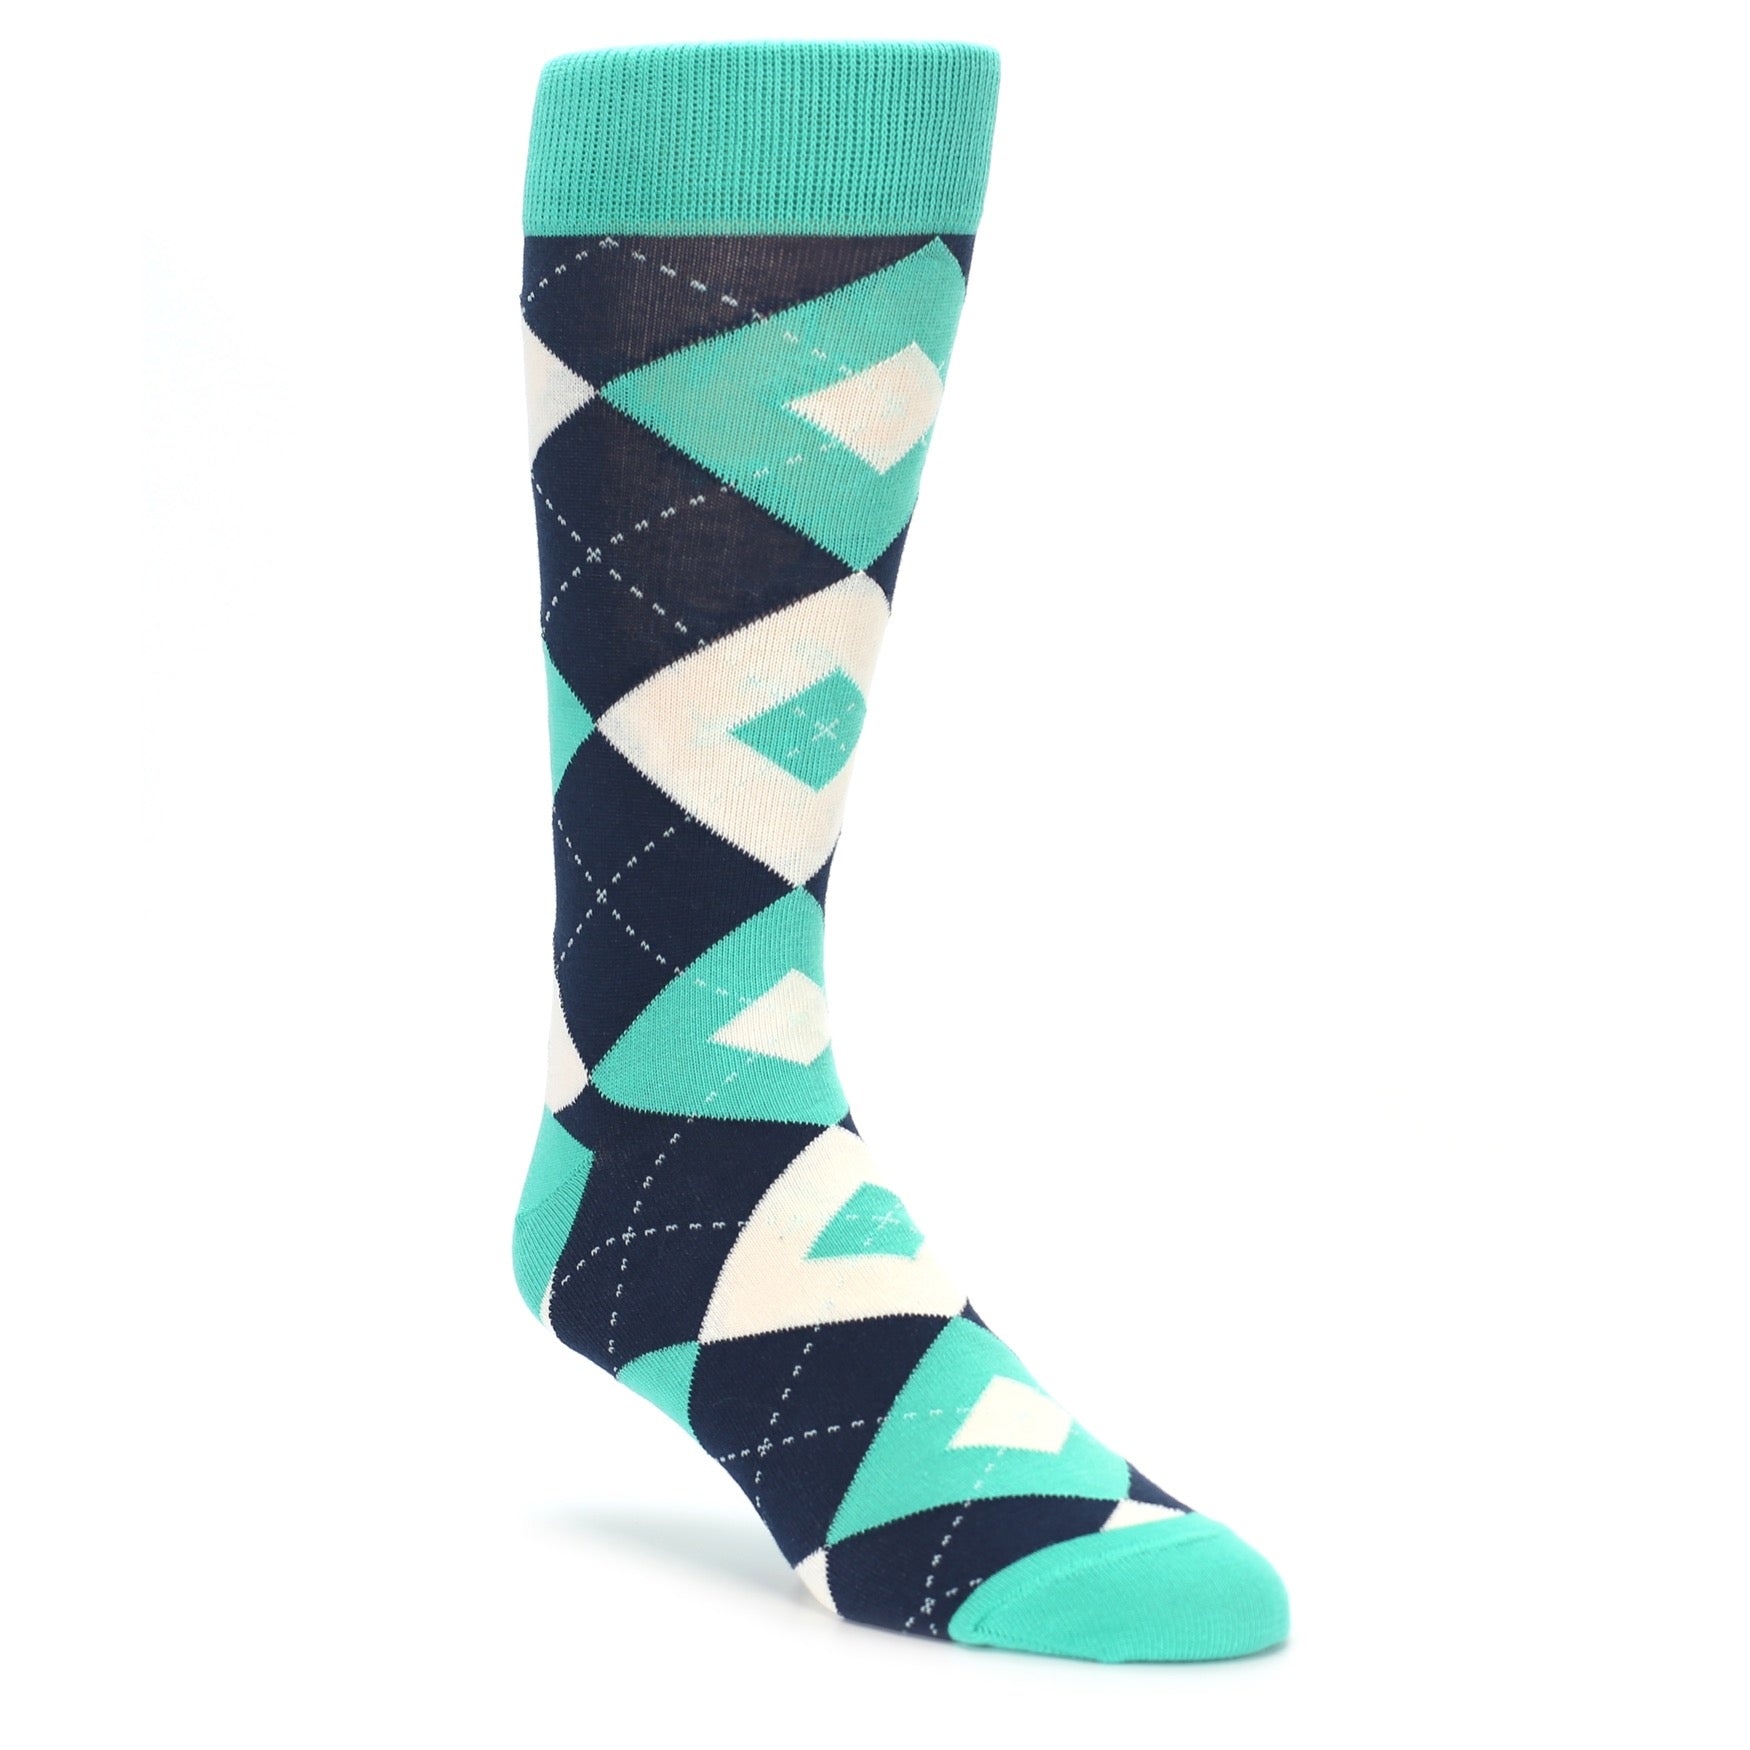 Turquoise Navy Argyle Wedding Socks for Groomsmen